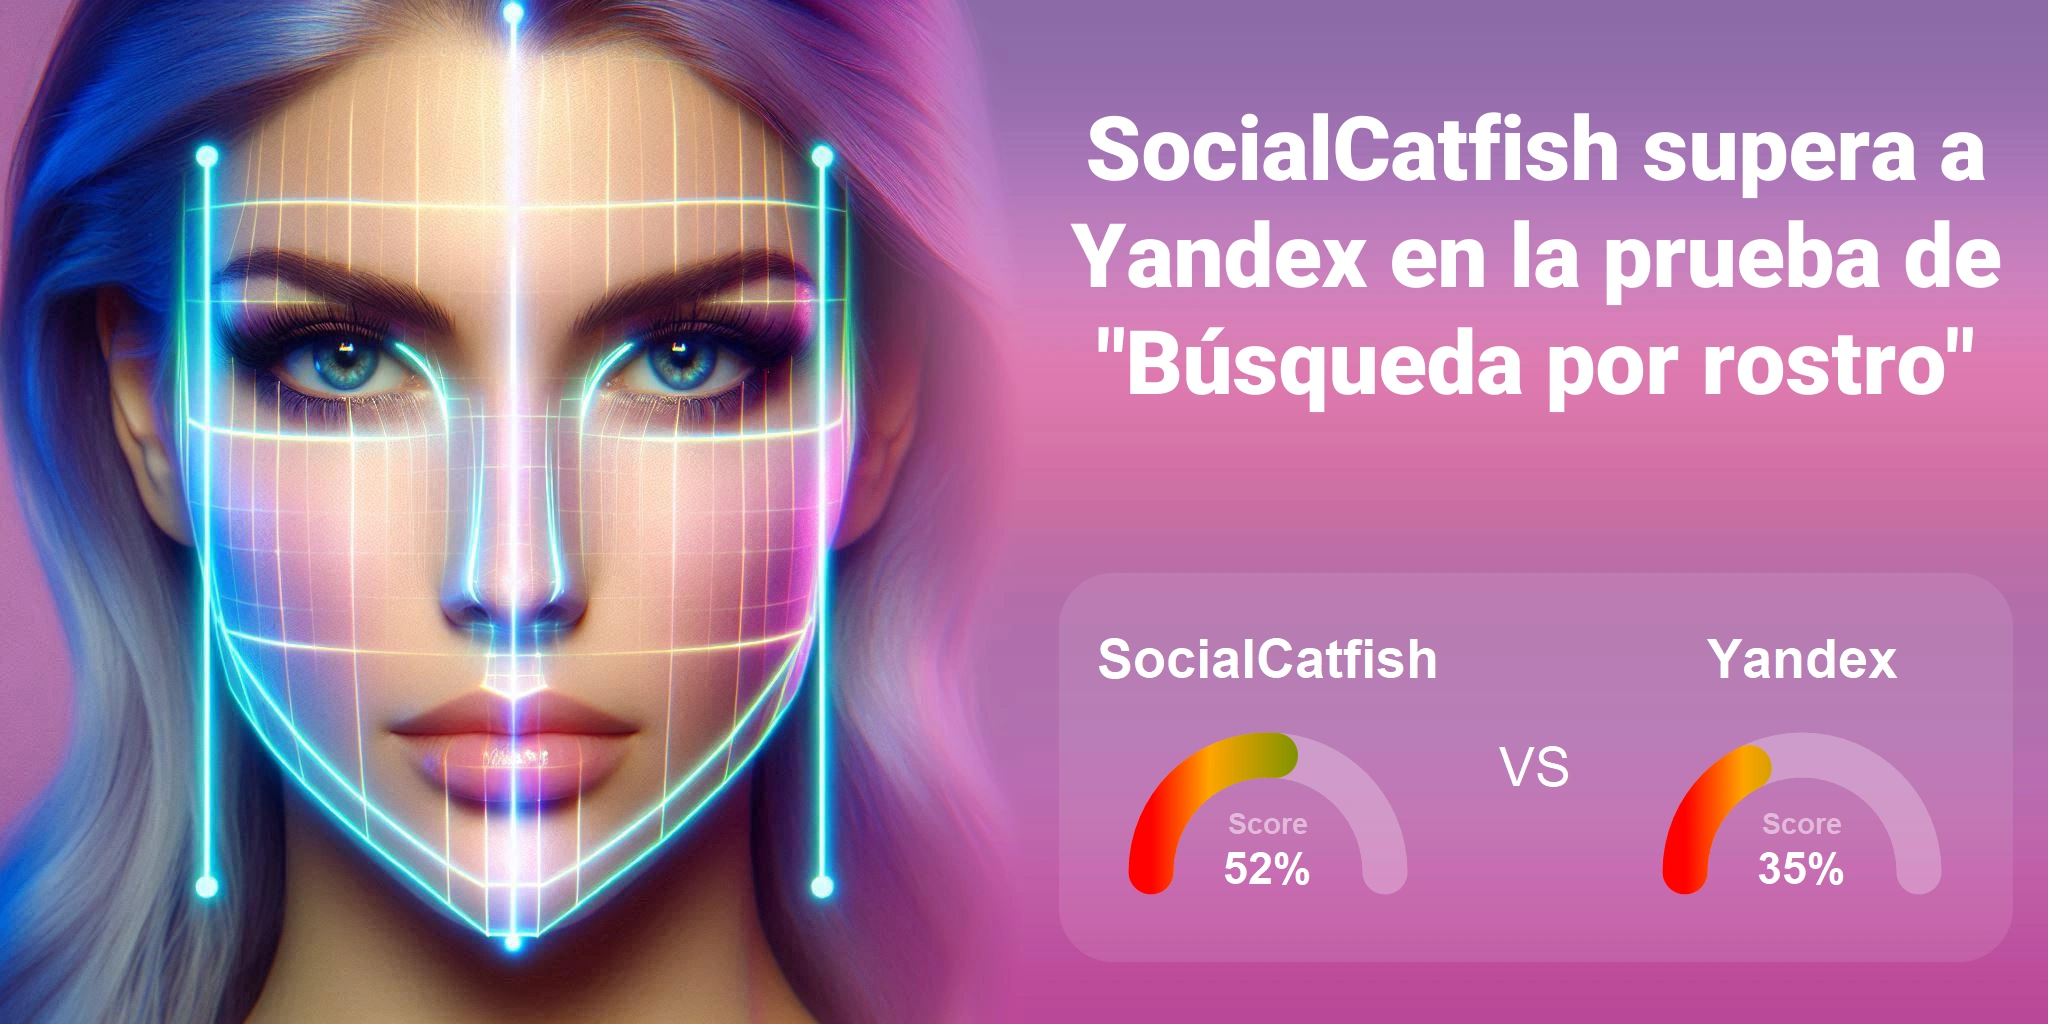 ¿Cuál es mejor para la búsqueda facial: <br>SocialCatfish o Yandex?